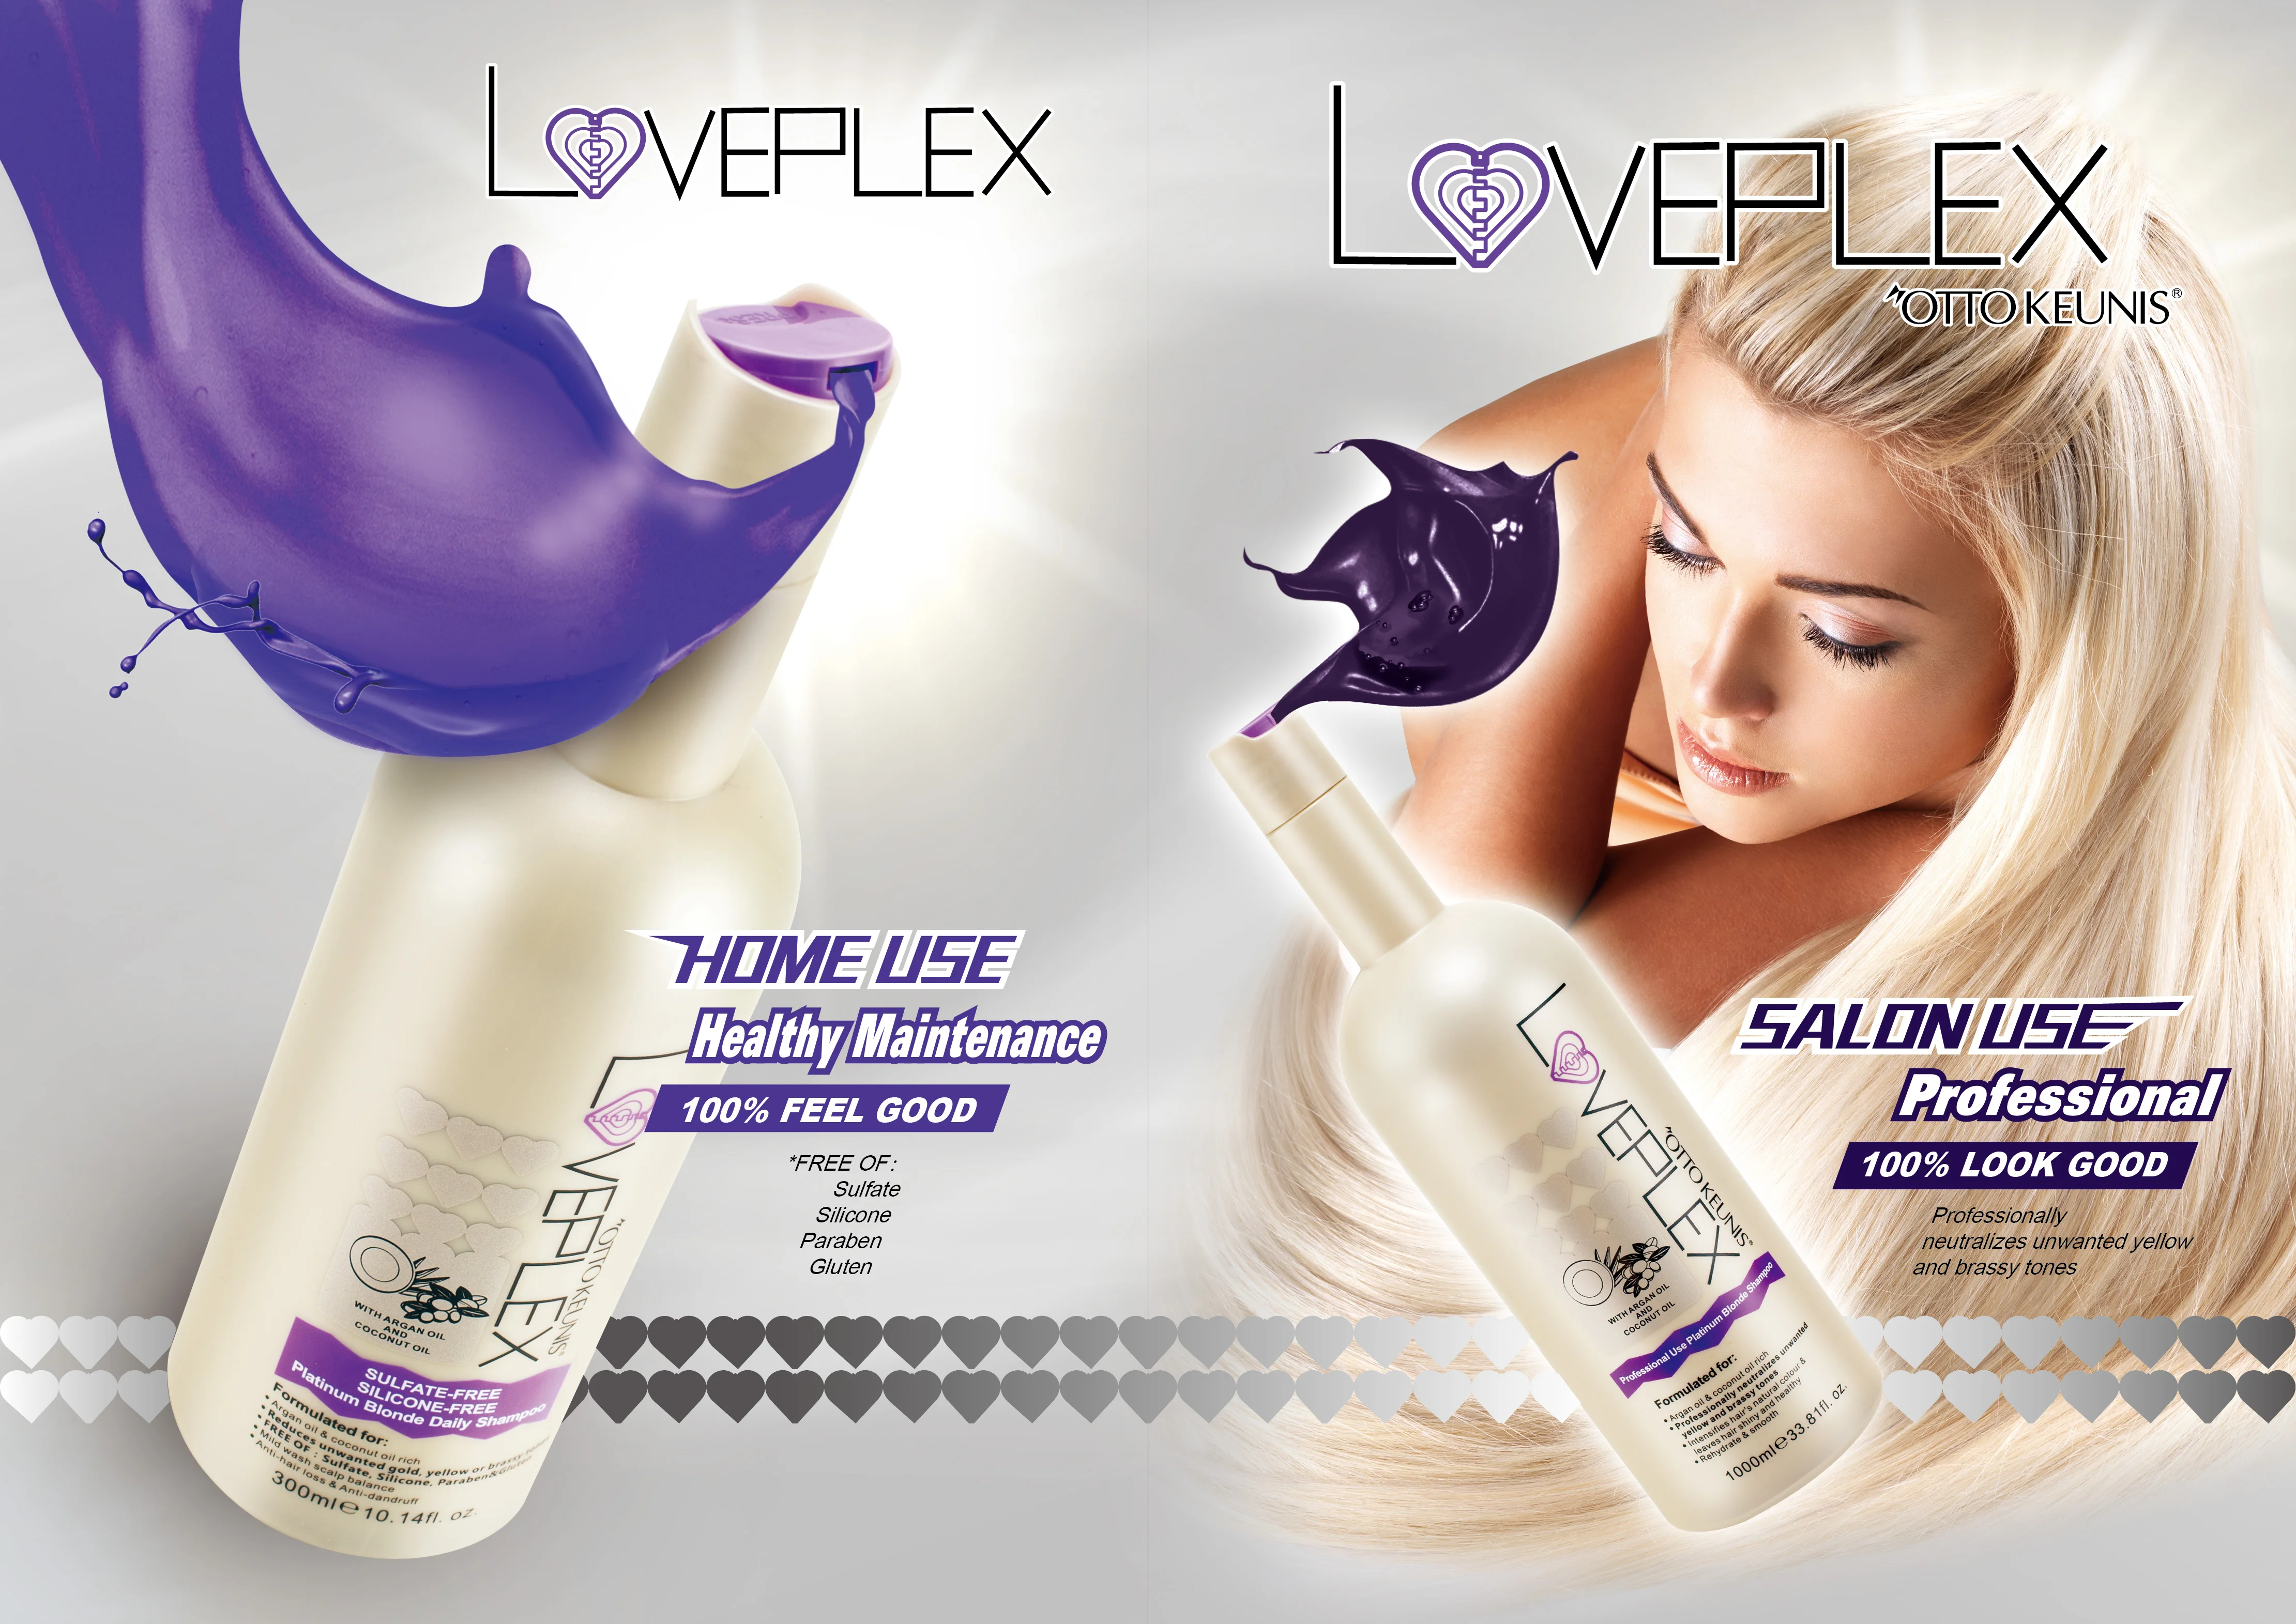 Loveplex Salon Professional Purple Silver Shampoo For Protect